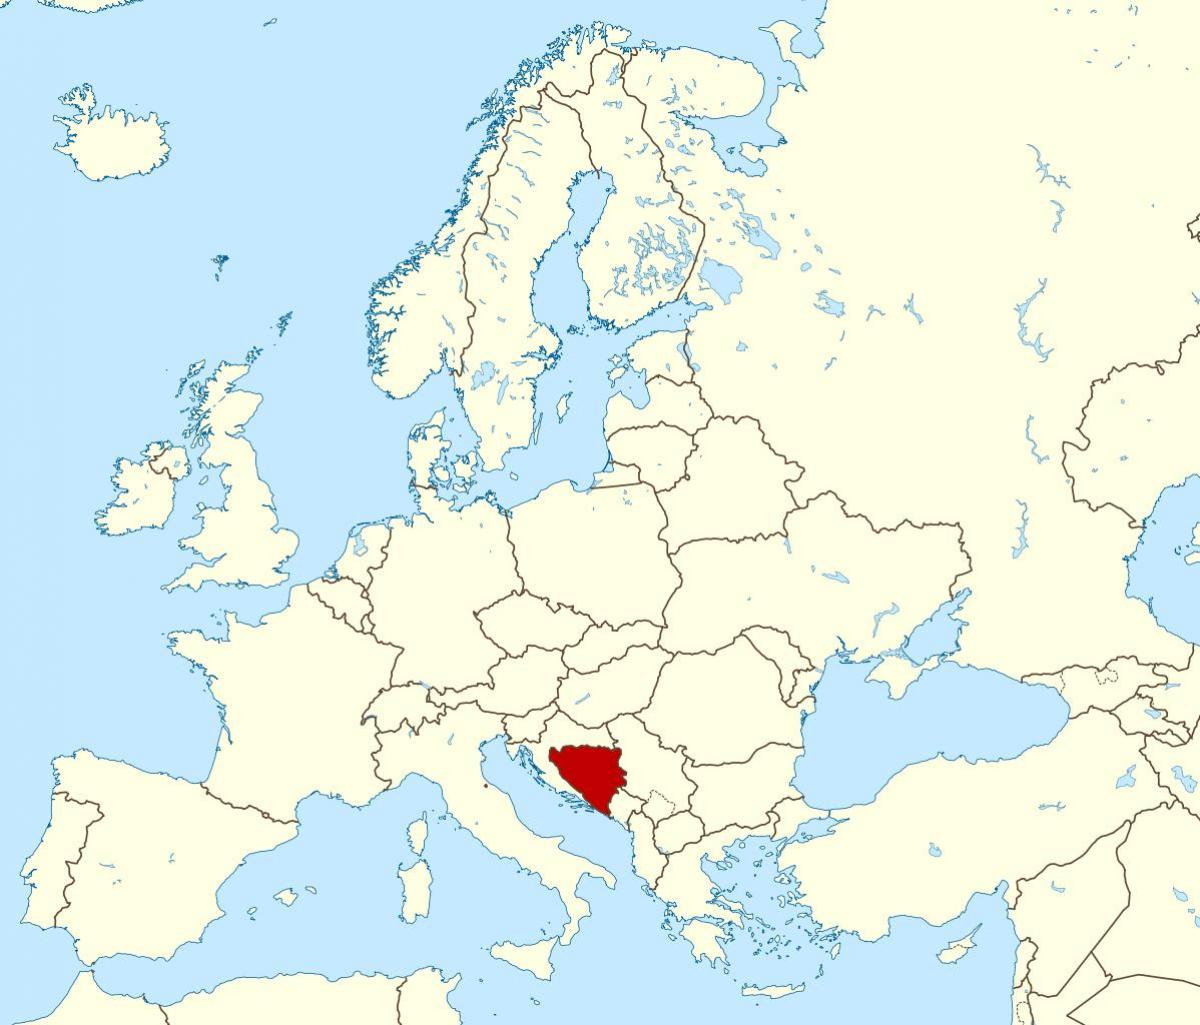 Bosnia na Herzegovina kwenye ramani ya dunia